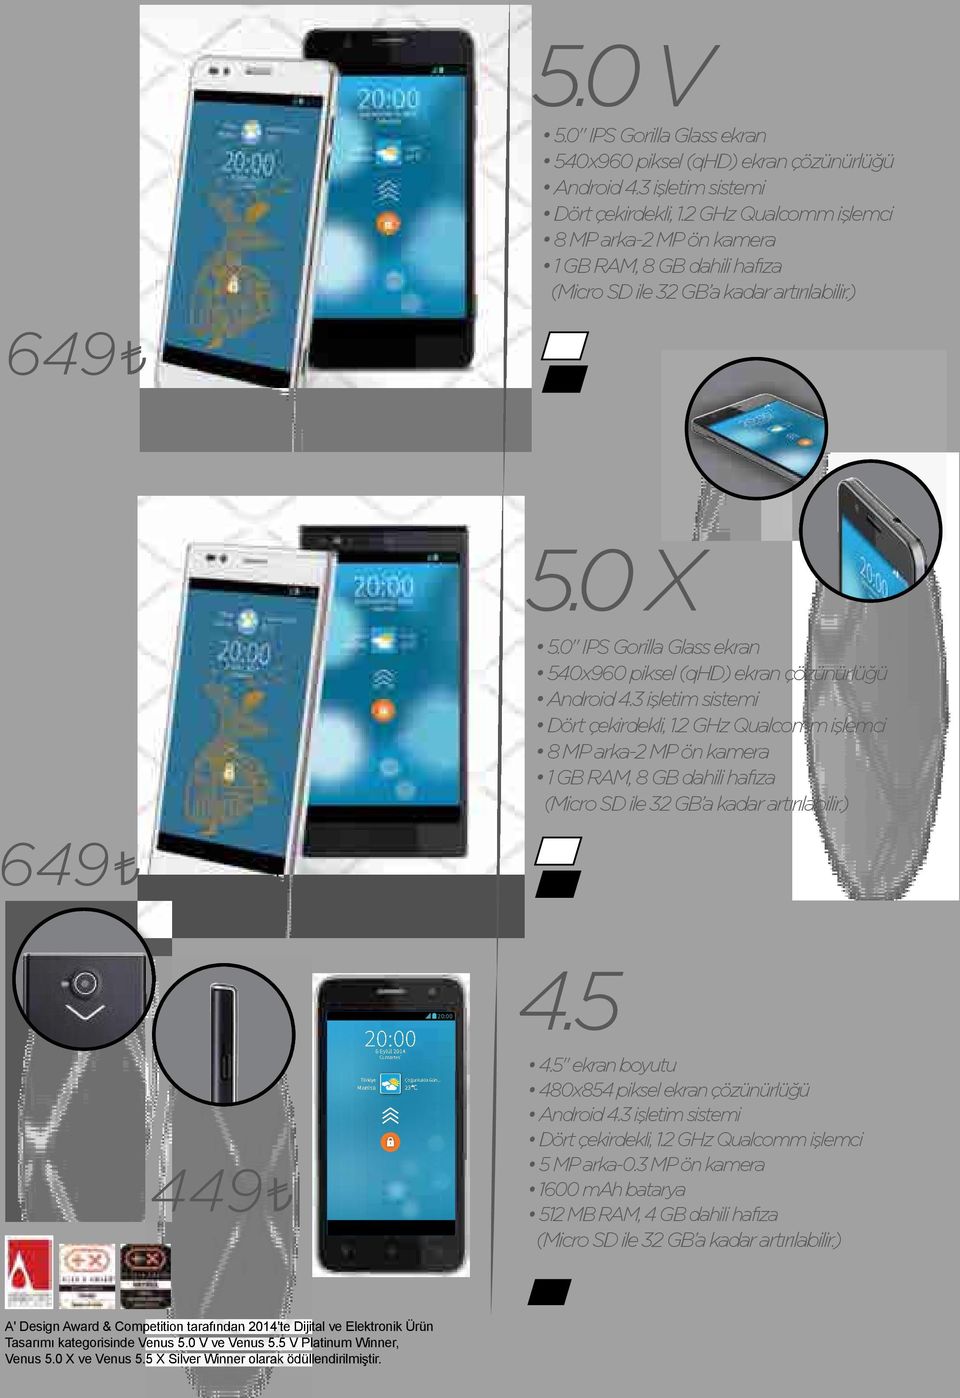 0" IPS Gorilla Glass ekran 540x960 piksel (qhd) ekran çözünürlüğü Android 4.3 işletim sistemi Dört çekirdekli, 1.